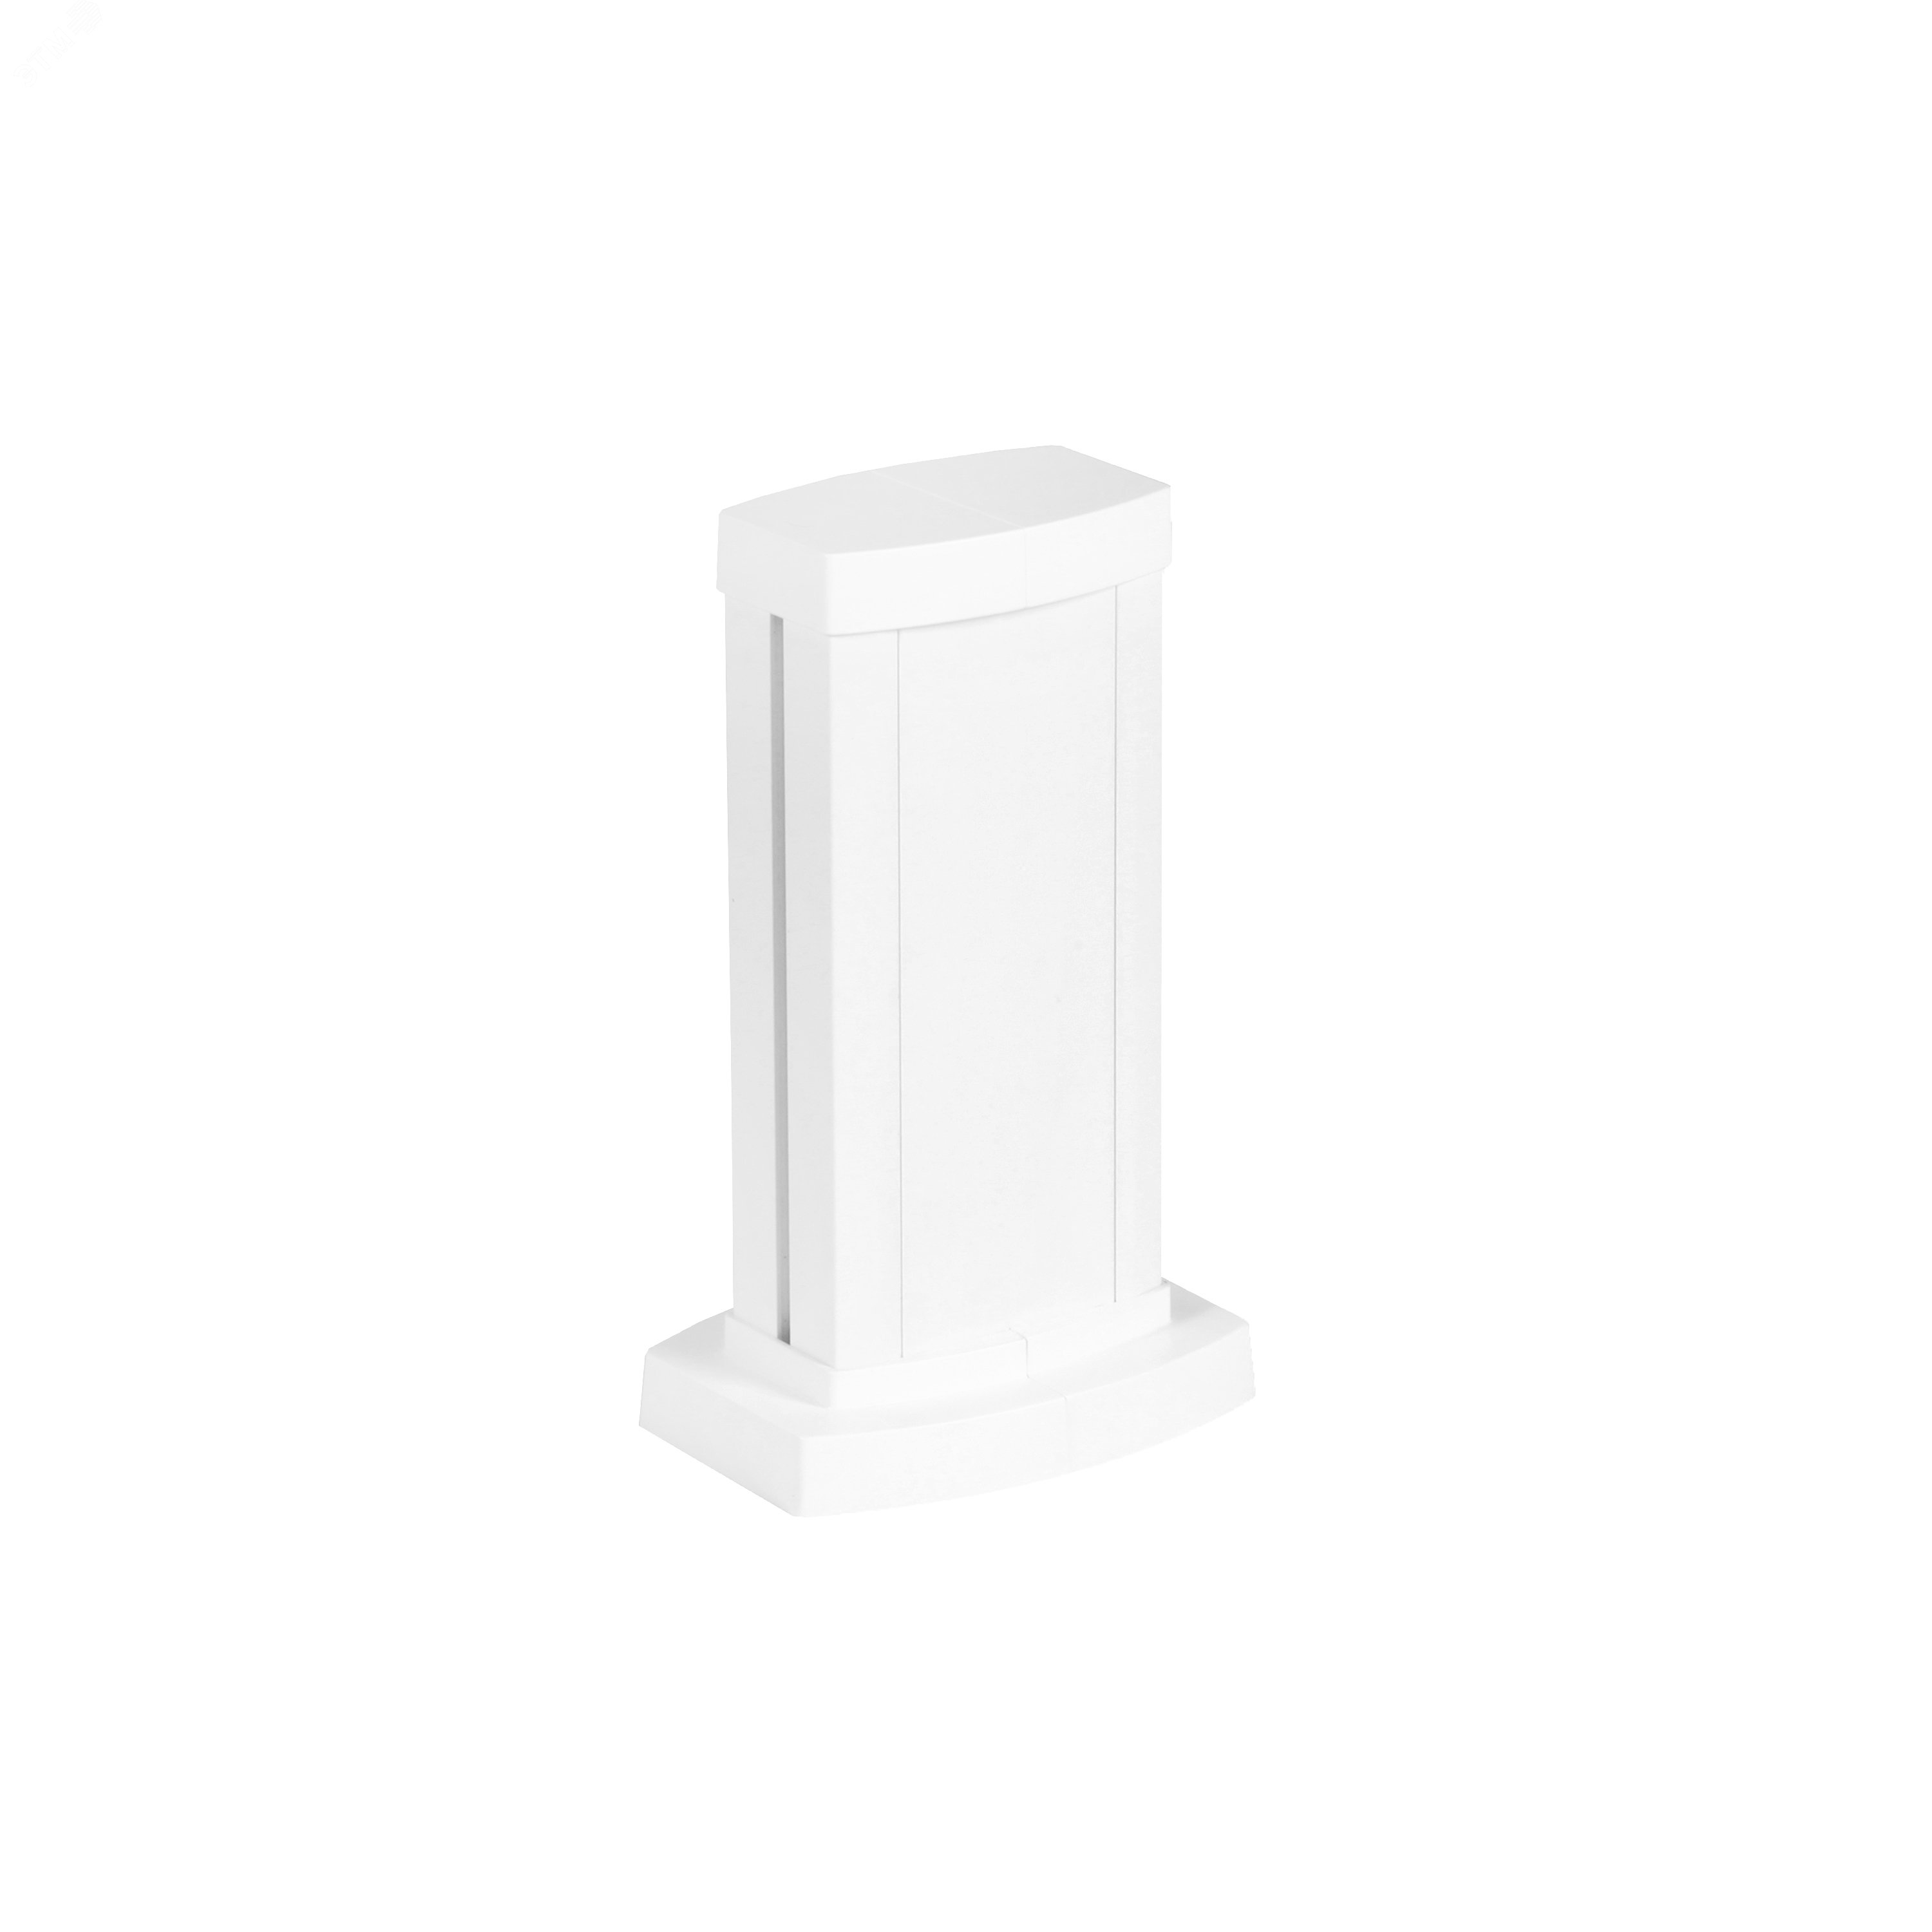 Универсальная мини-колонна алюминиевая с крышкой из алюминия 1 секция, высота 0,3 метра, цвет белый 653100 Legrand - превью 2